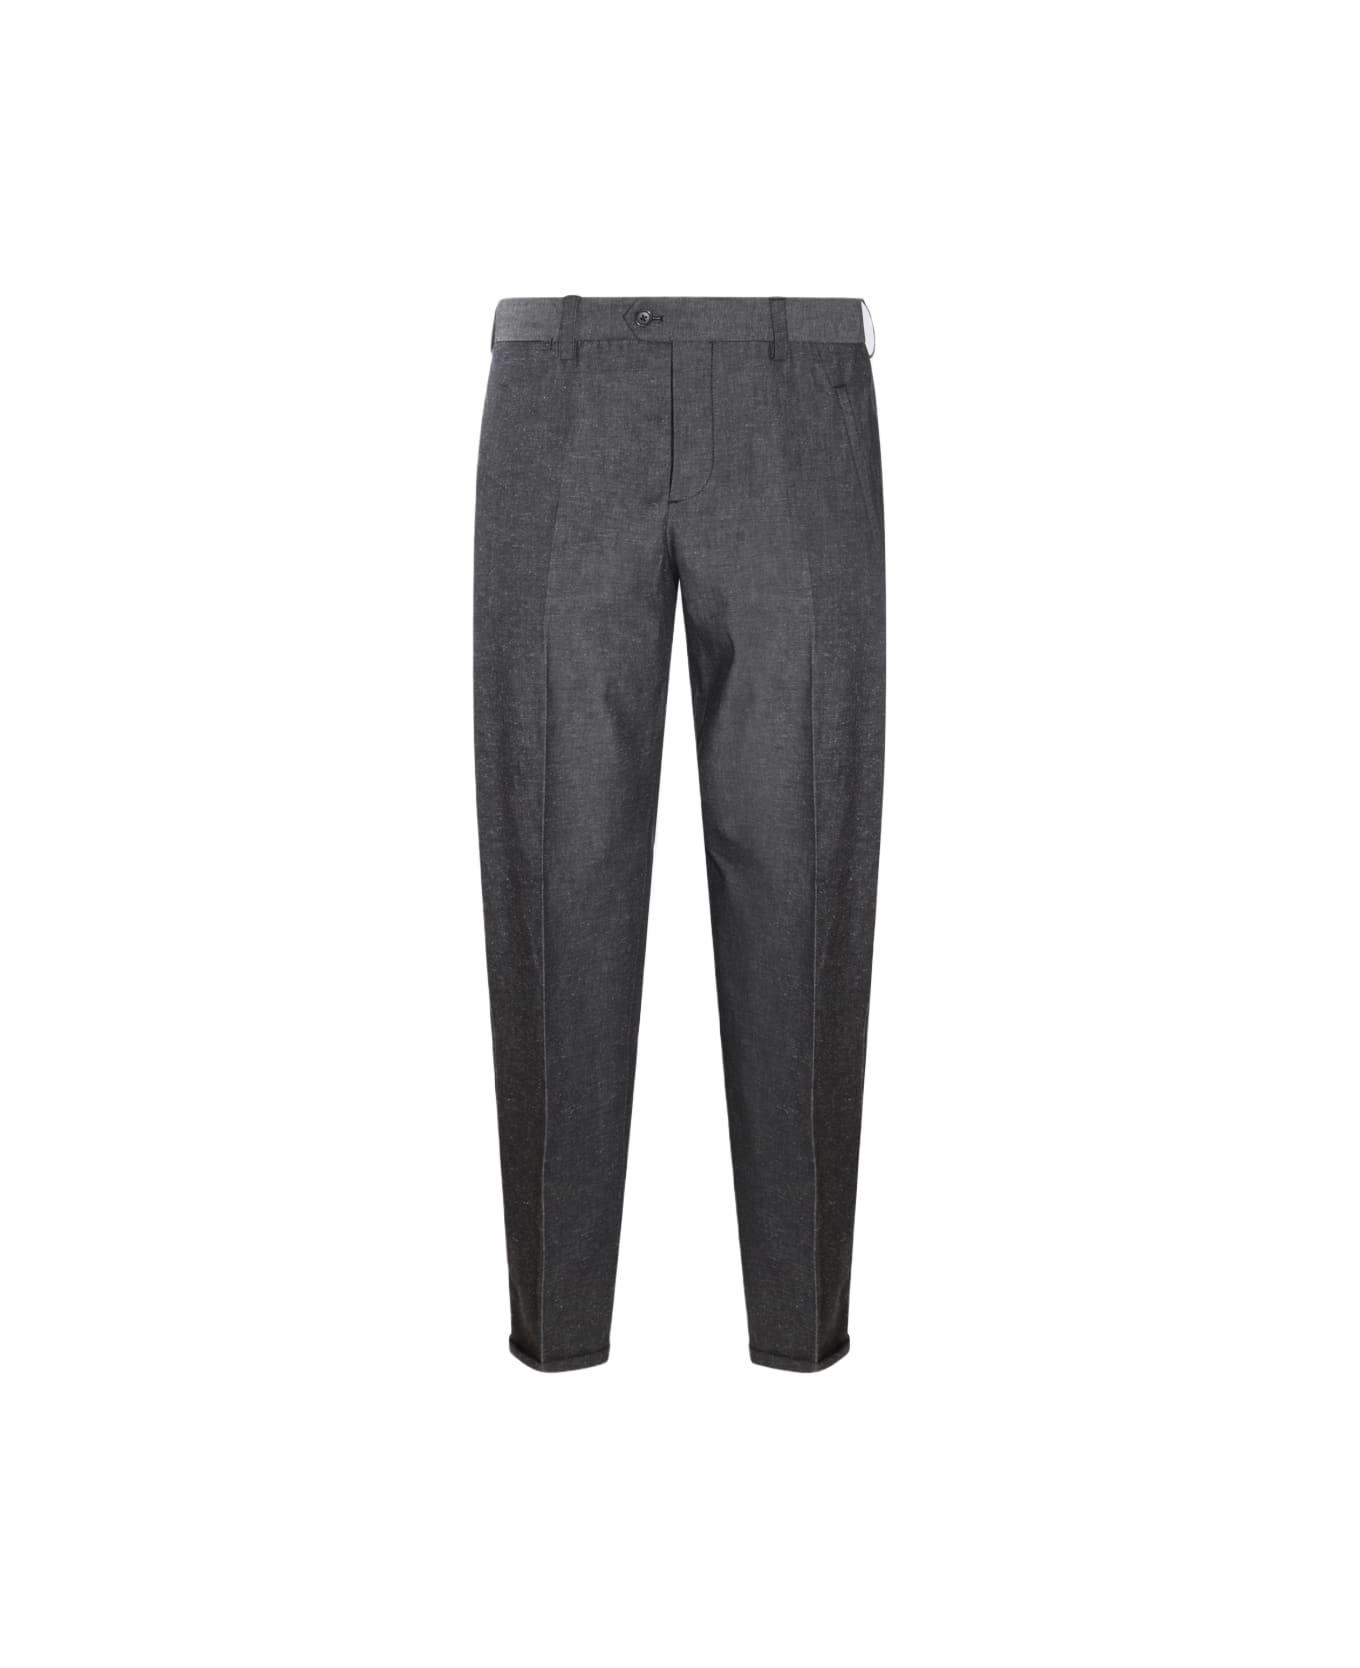 PT Torino Grey Cotton Pants - Black ボトムス